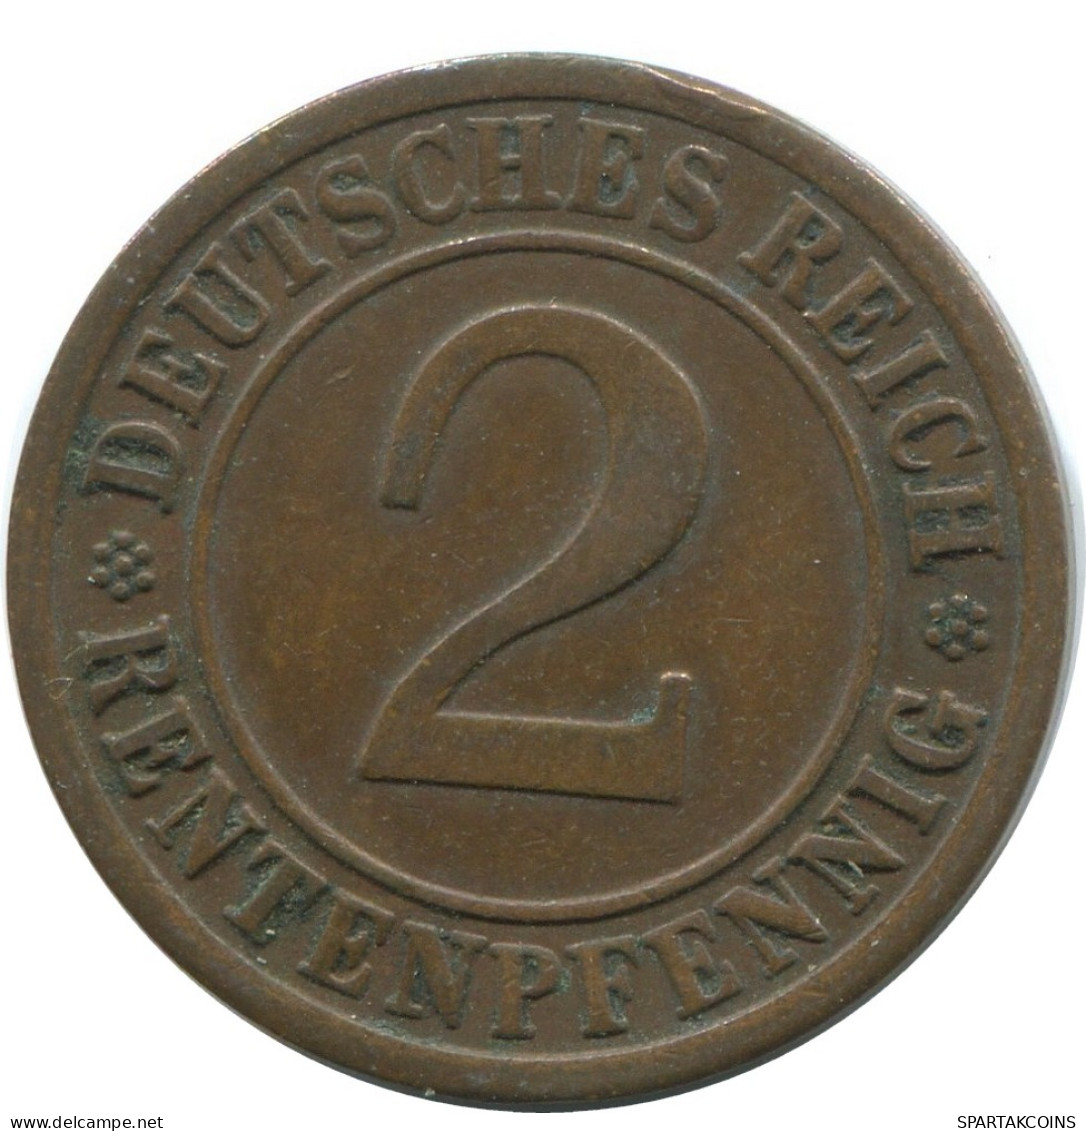 2 RENTENPFENNIG 1923 F ALEMANIA Moneda GERMANY #AE289.E - 2 Rentenpfennig & 2 Reichspfennig